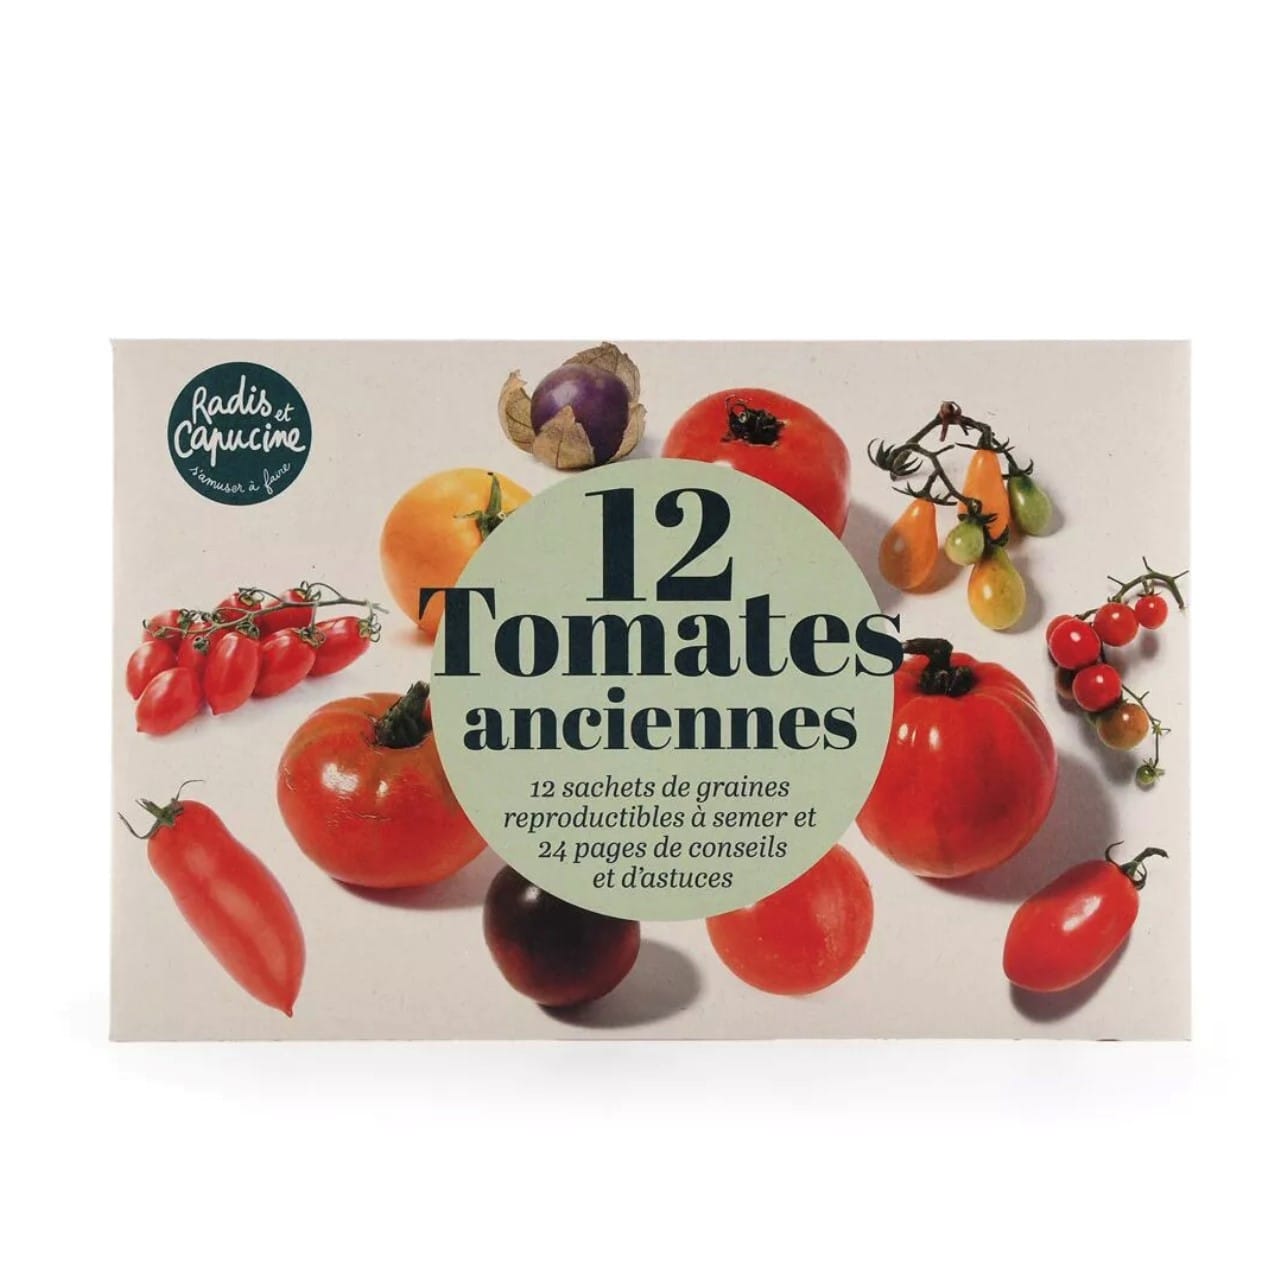 La collection de tomates anciennes